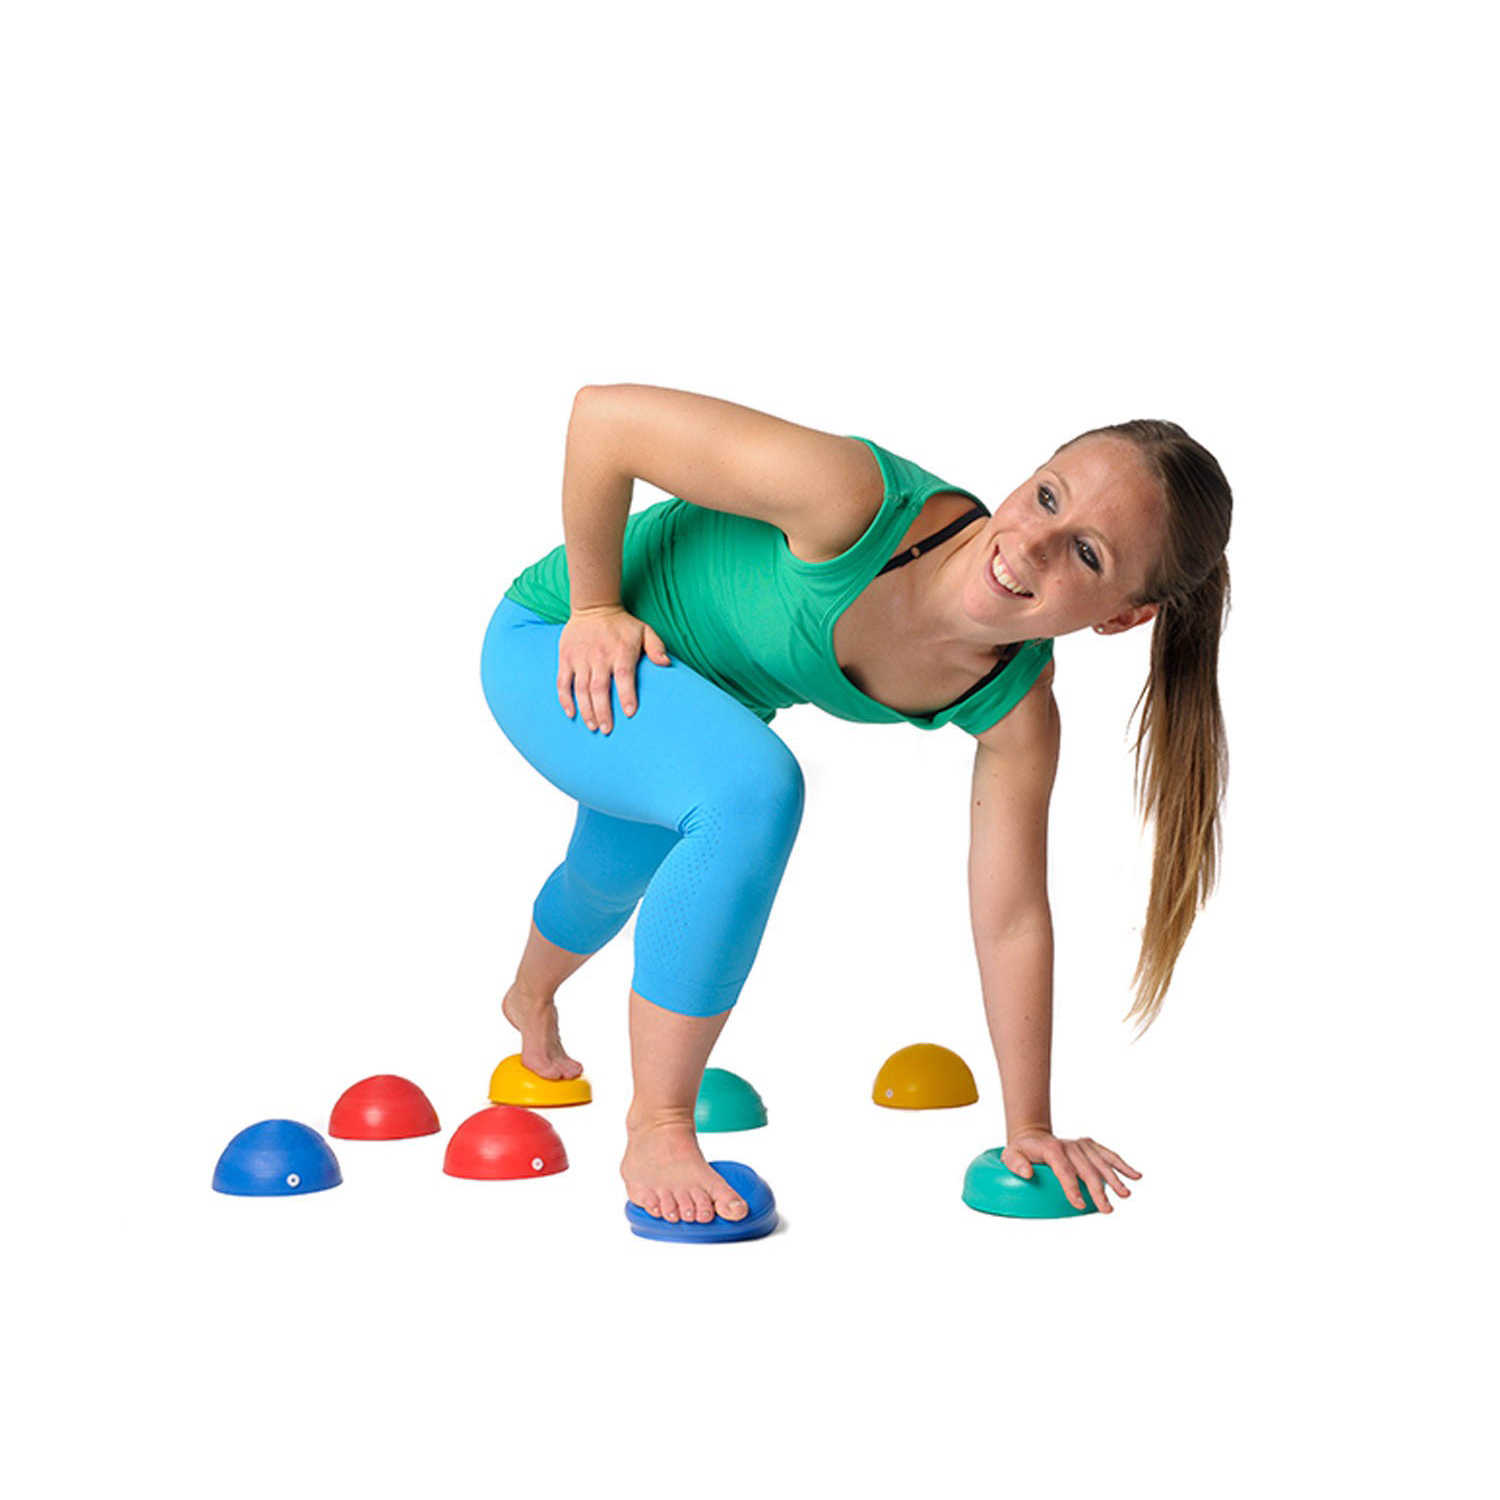 Yoga Ball Kleiner Pilates Mini Balance Ball für Bauchübungen